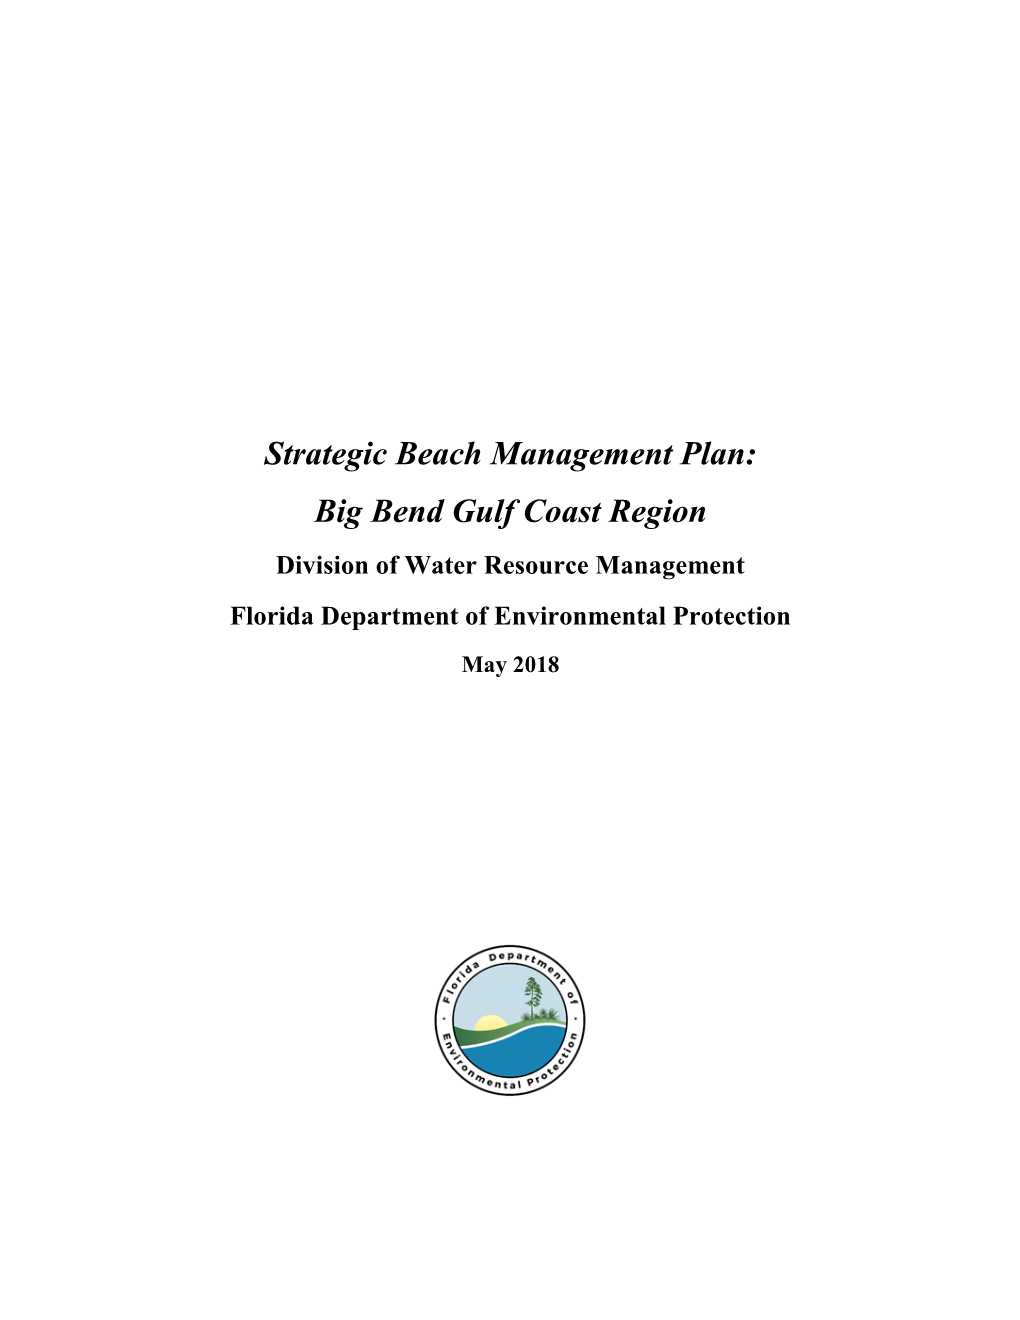 Strategic Beach Management Plan, Big Bend Region, 2018